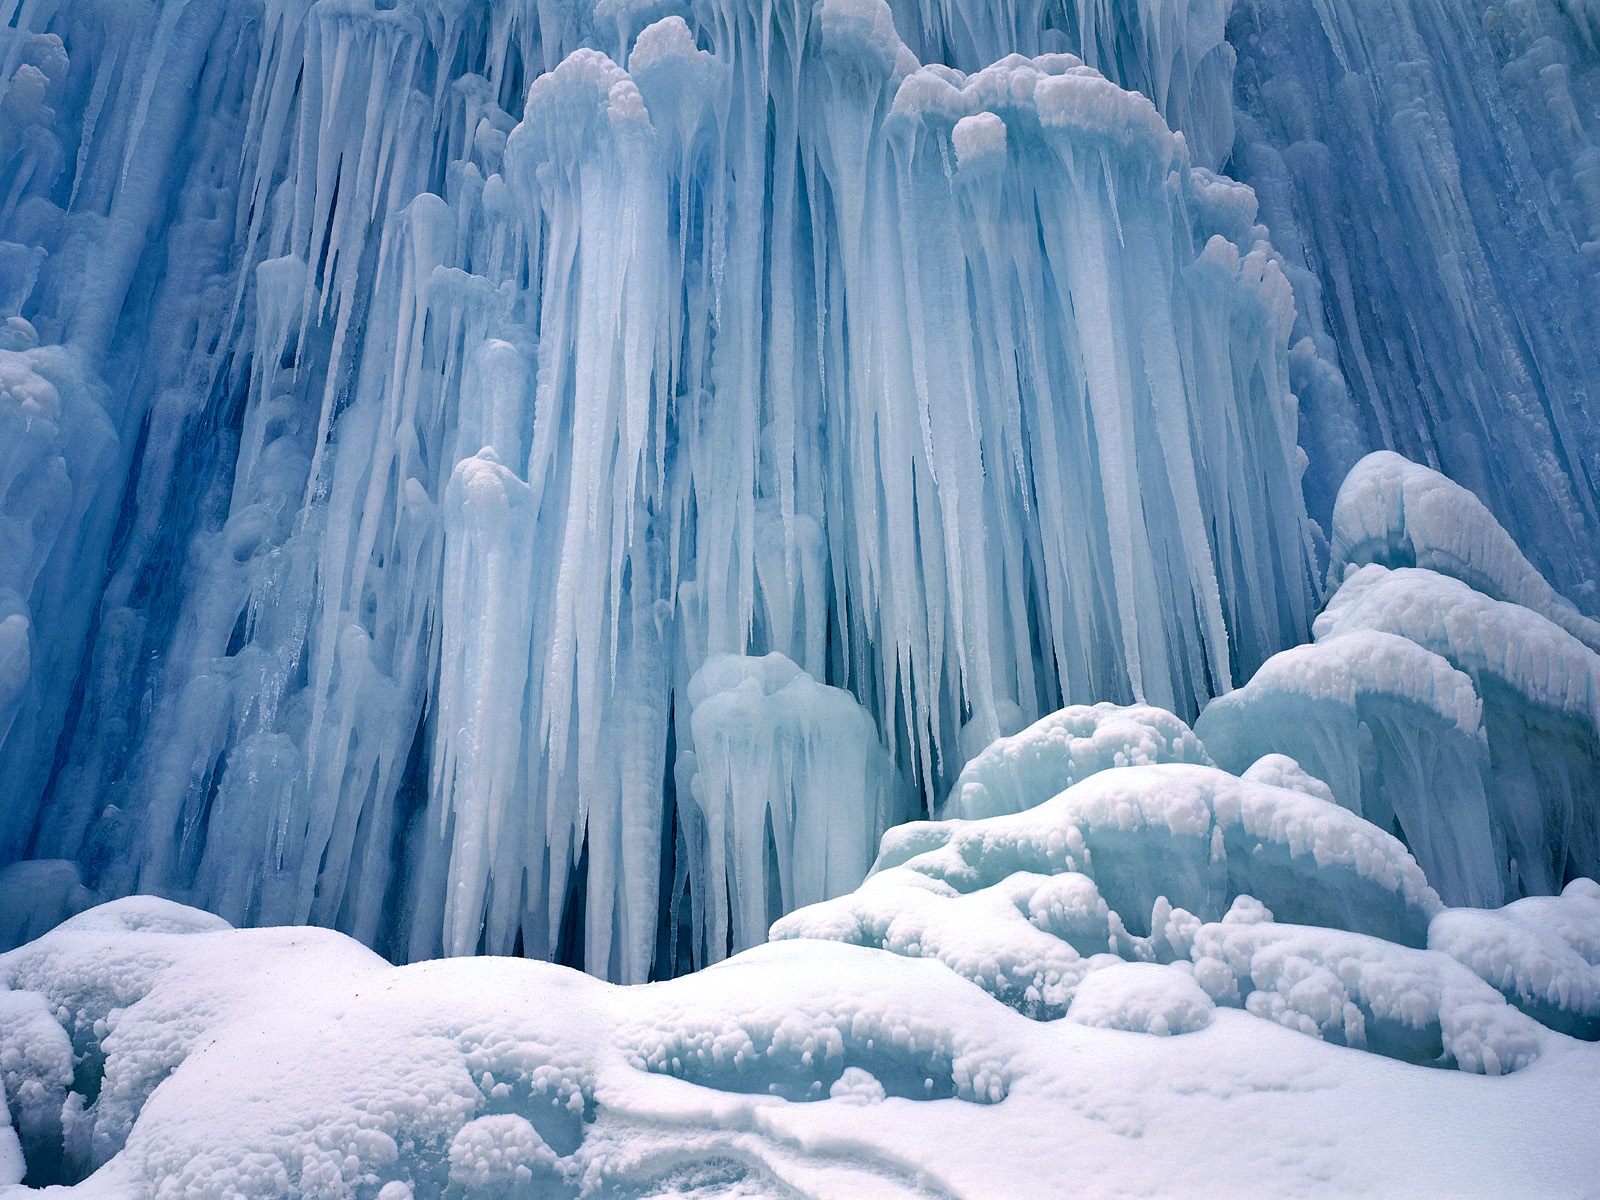 Winter Wonderland Scenes | 1600*1200 Winter wonderland : Dreamy